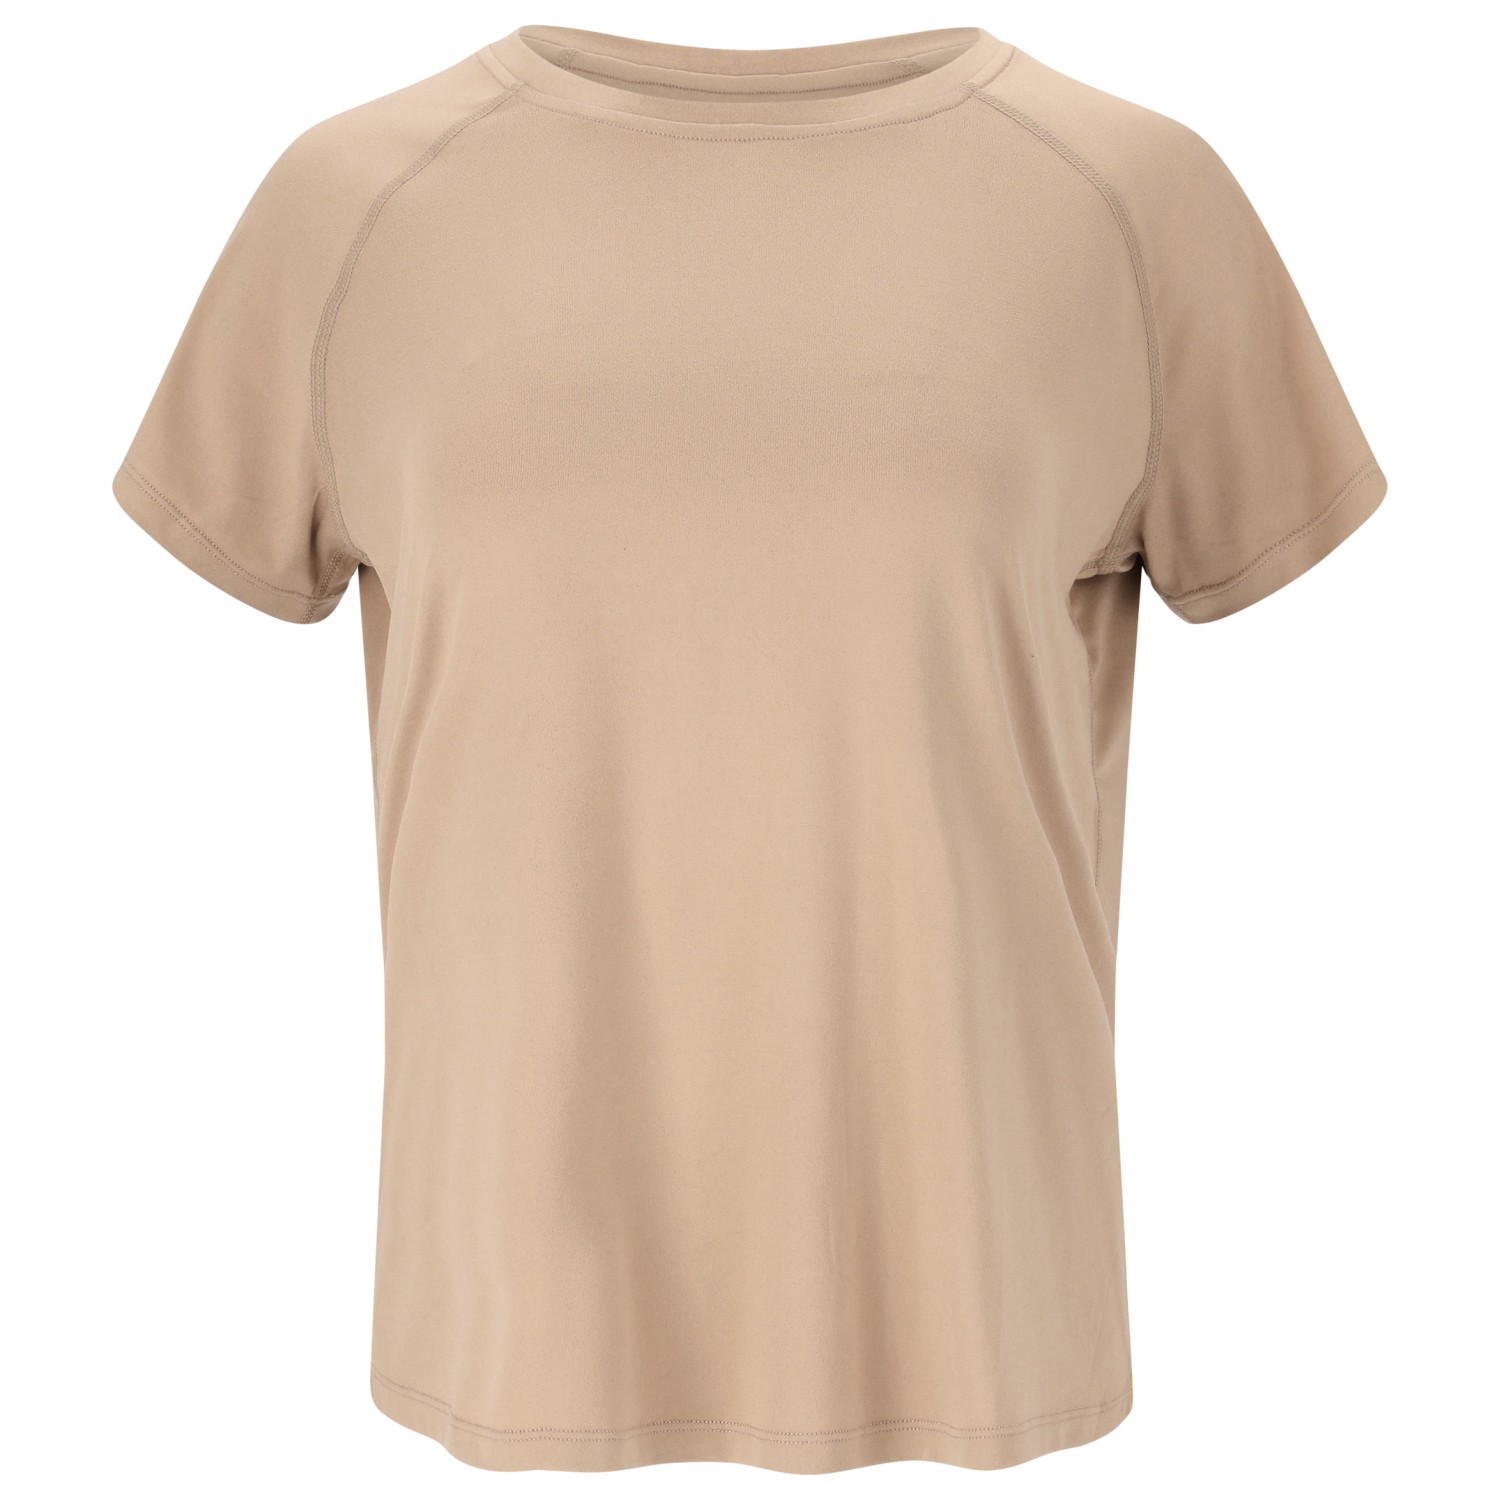 Функциональная рубашка Athlecia Women's Gaina S/S Tee, цвет Dove цена и фото